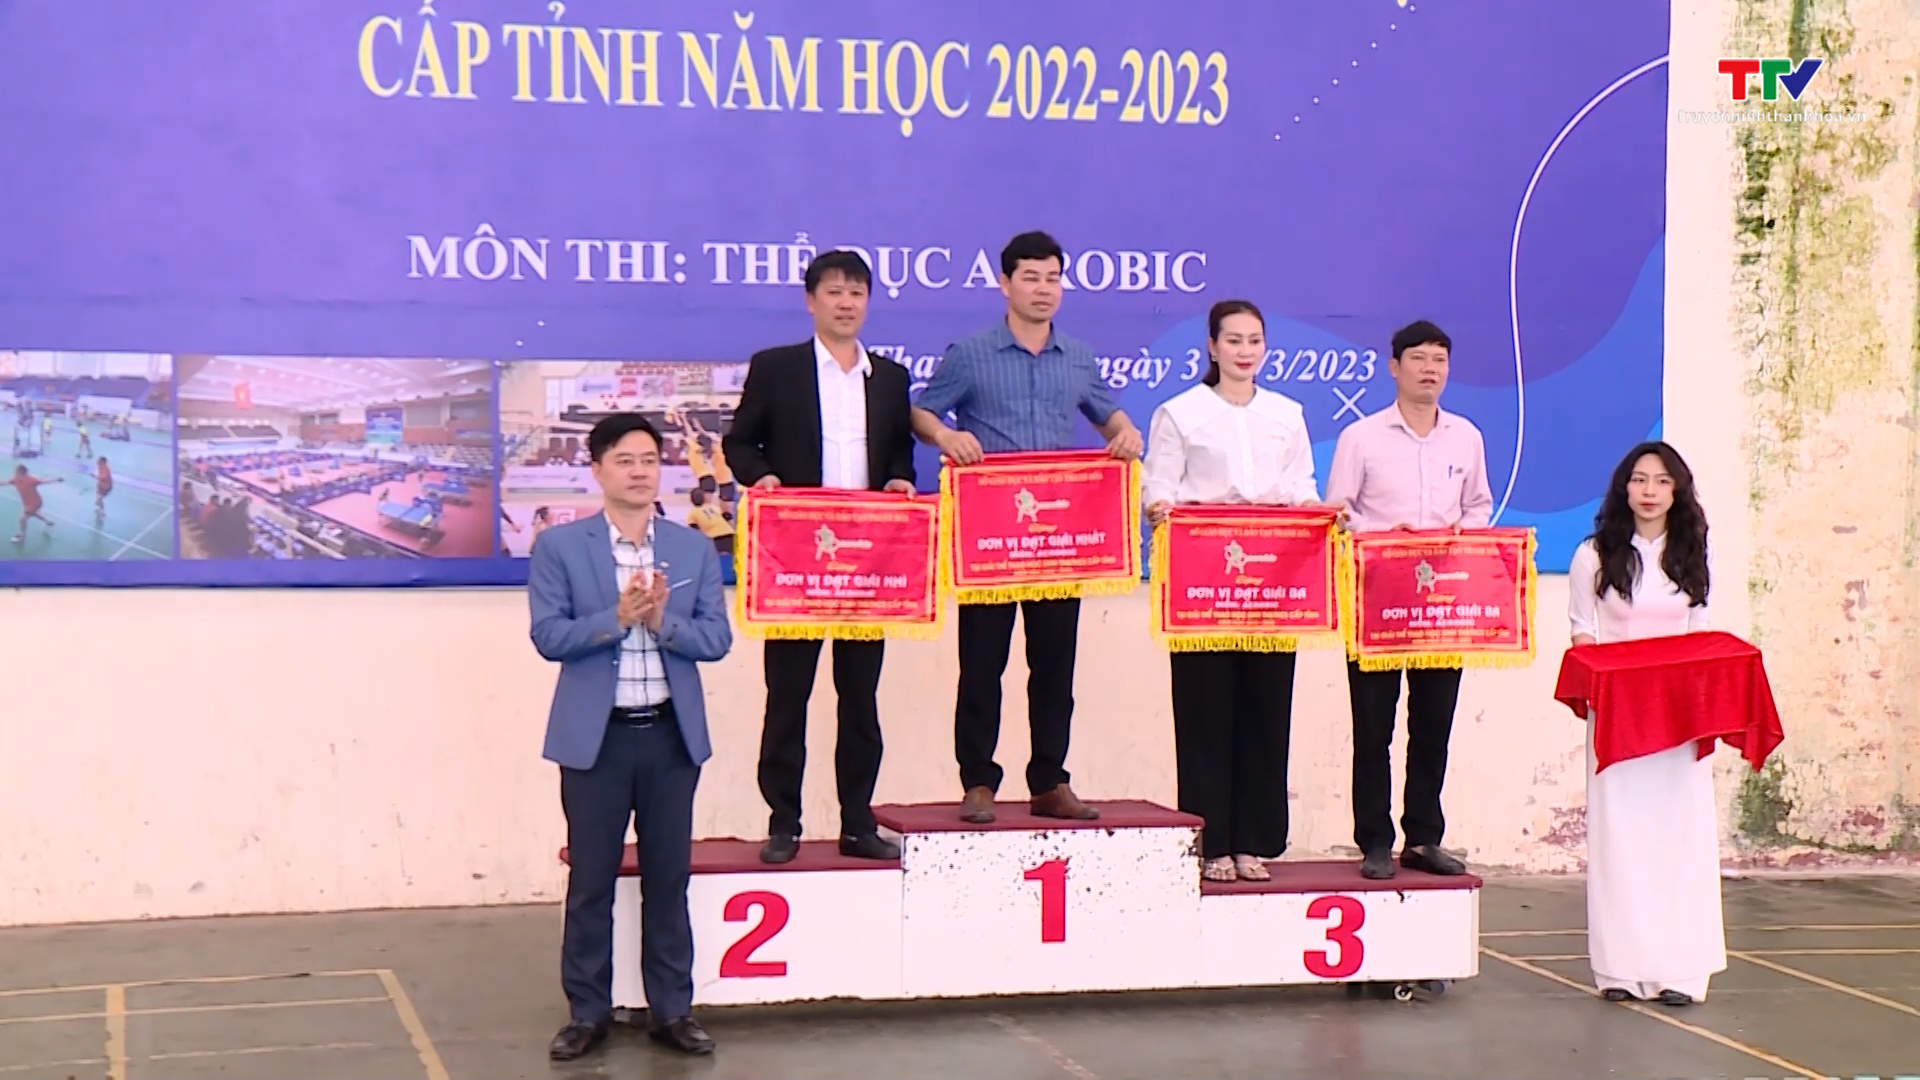 Sôi nổi Giải thể thao học sinh tiêu hoc va trung hoc cơ sơ tỉnh Thanh Hóa năm học 2022 - 2023  - Ảnh 3.